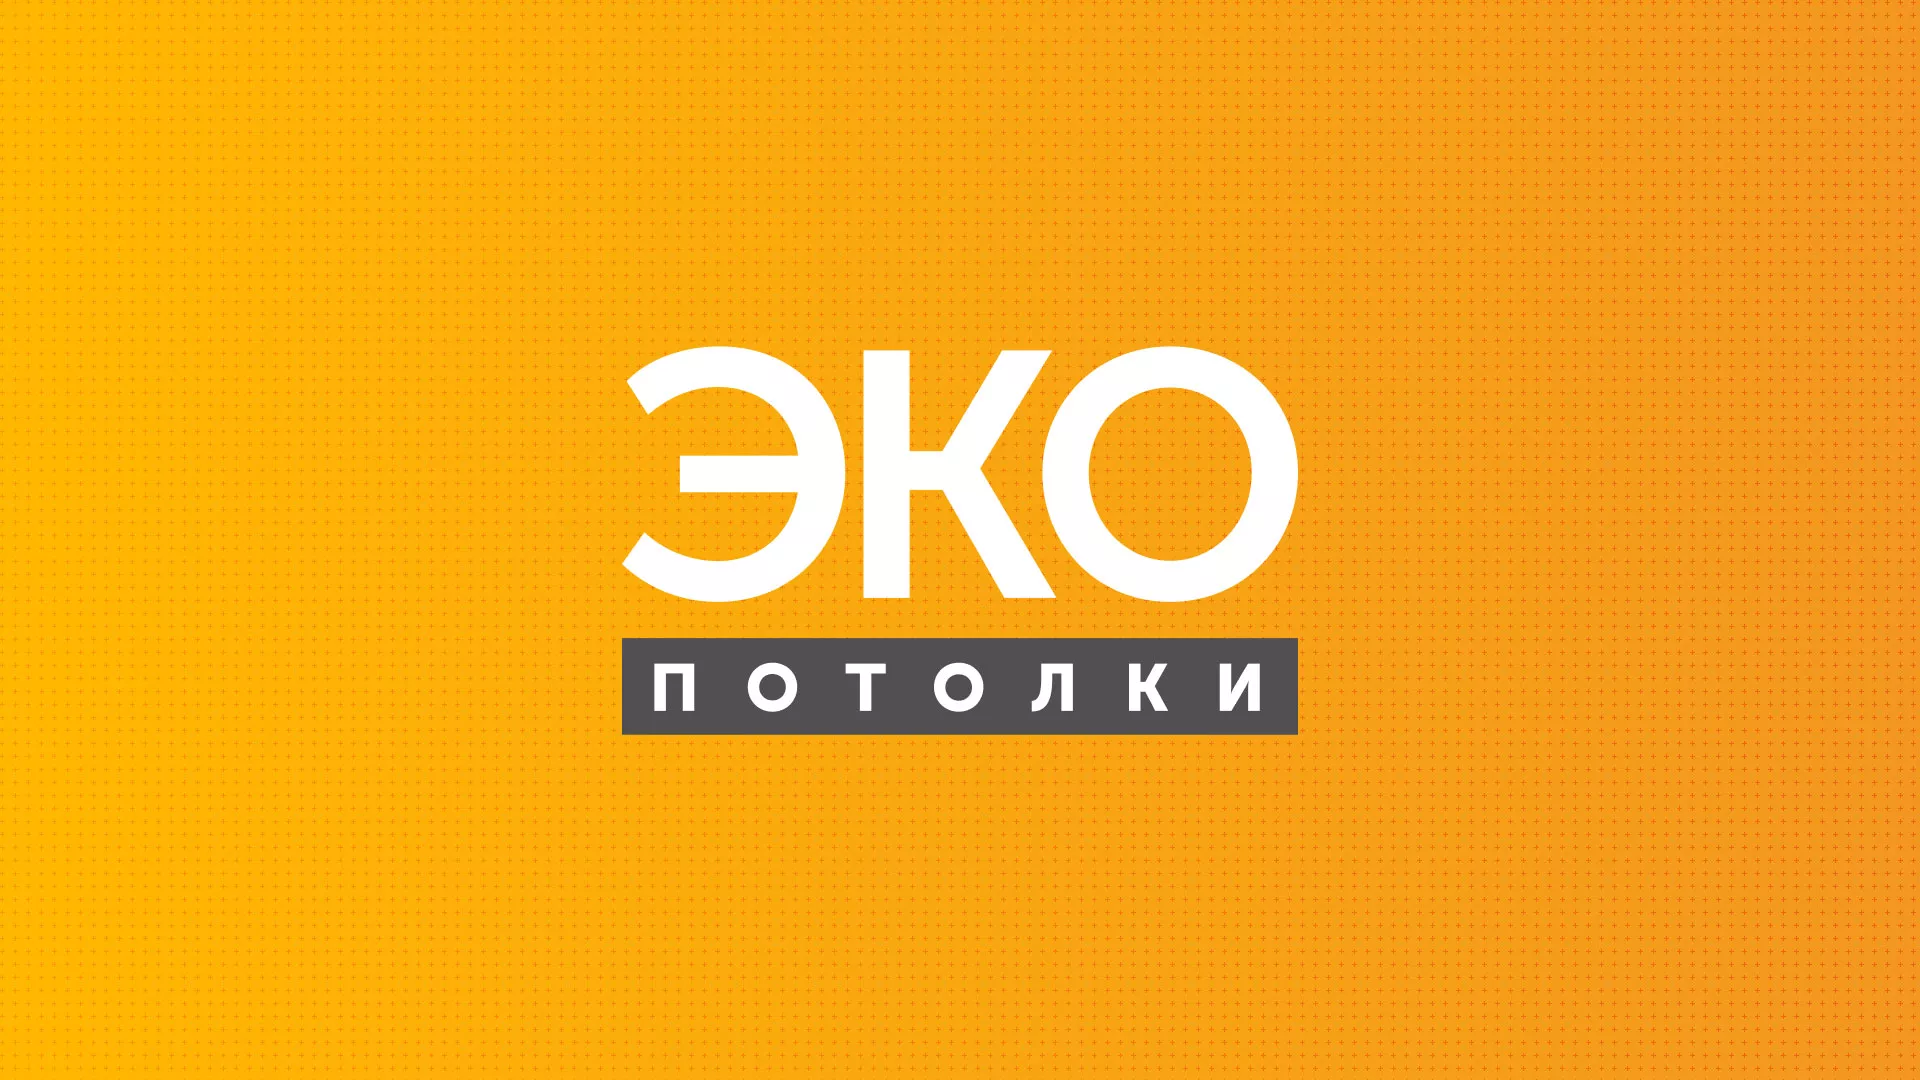 Разработка сайта по натяжным потолкам «Эко Потолки» в Смоленске